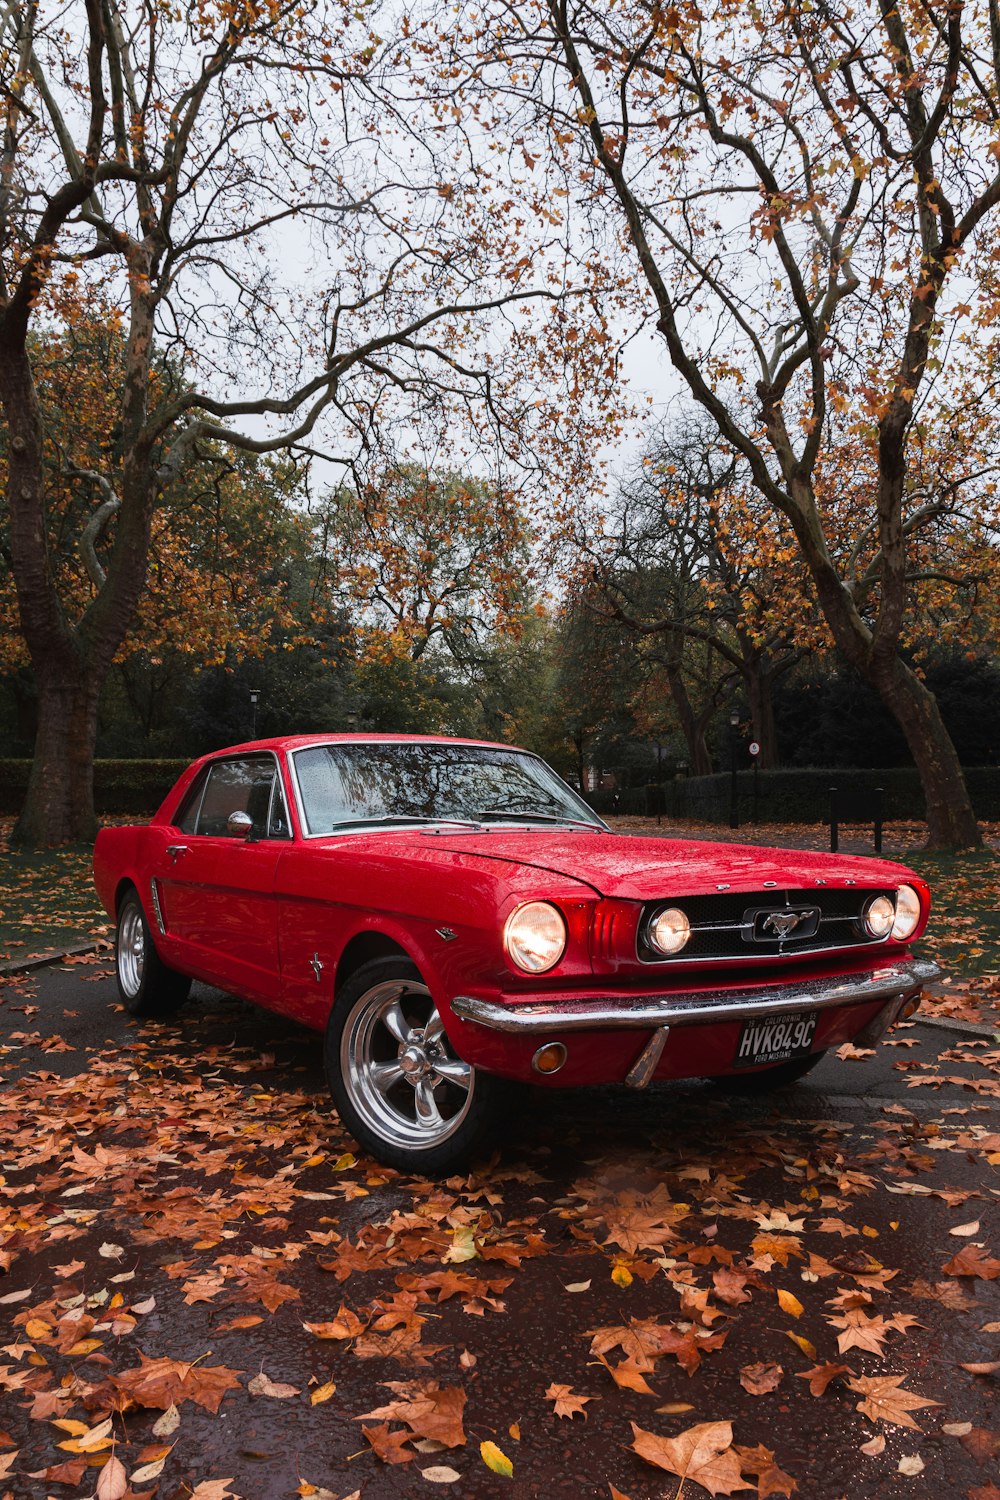 fotografia a fuoco selettiva della Ford Mustang coupé rossa parcheggiata